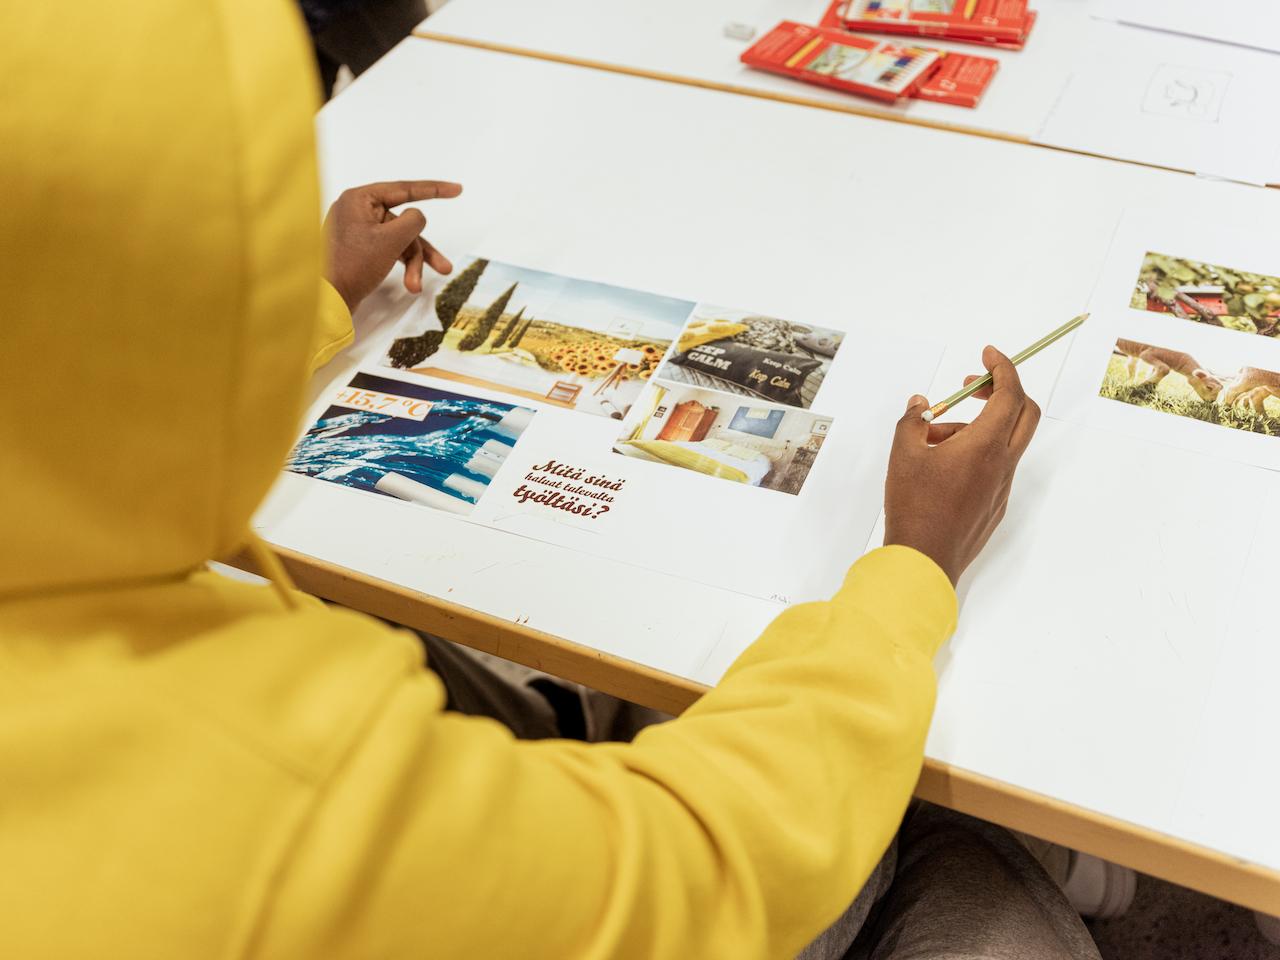 Oppilas istumassa pöydän ääressä kuva kädessä ja katsomassa kollaasia, jossa keskellä teksti: Mitä sinä haluat tulevalta työltäsi?